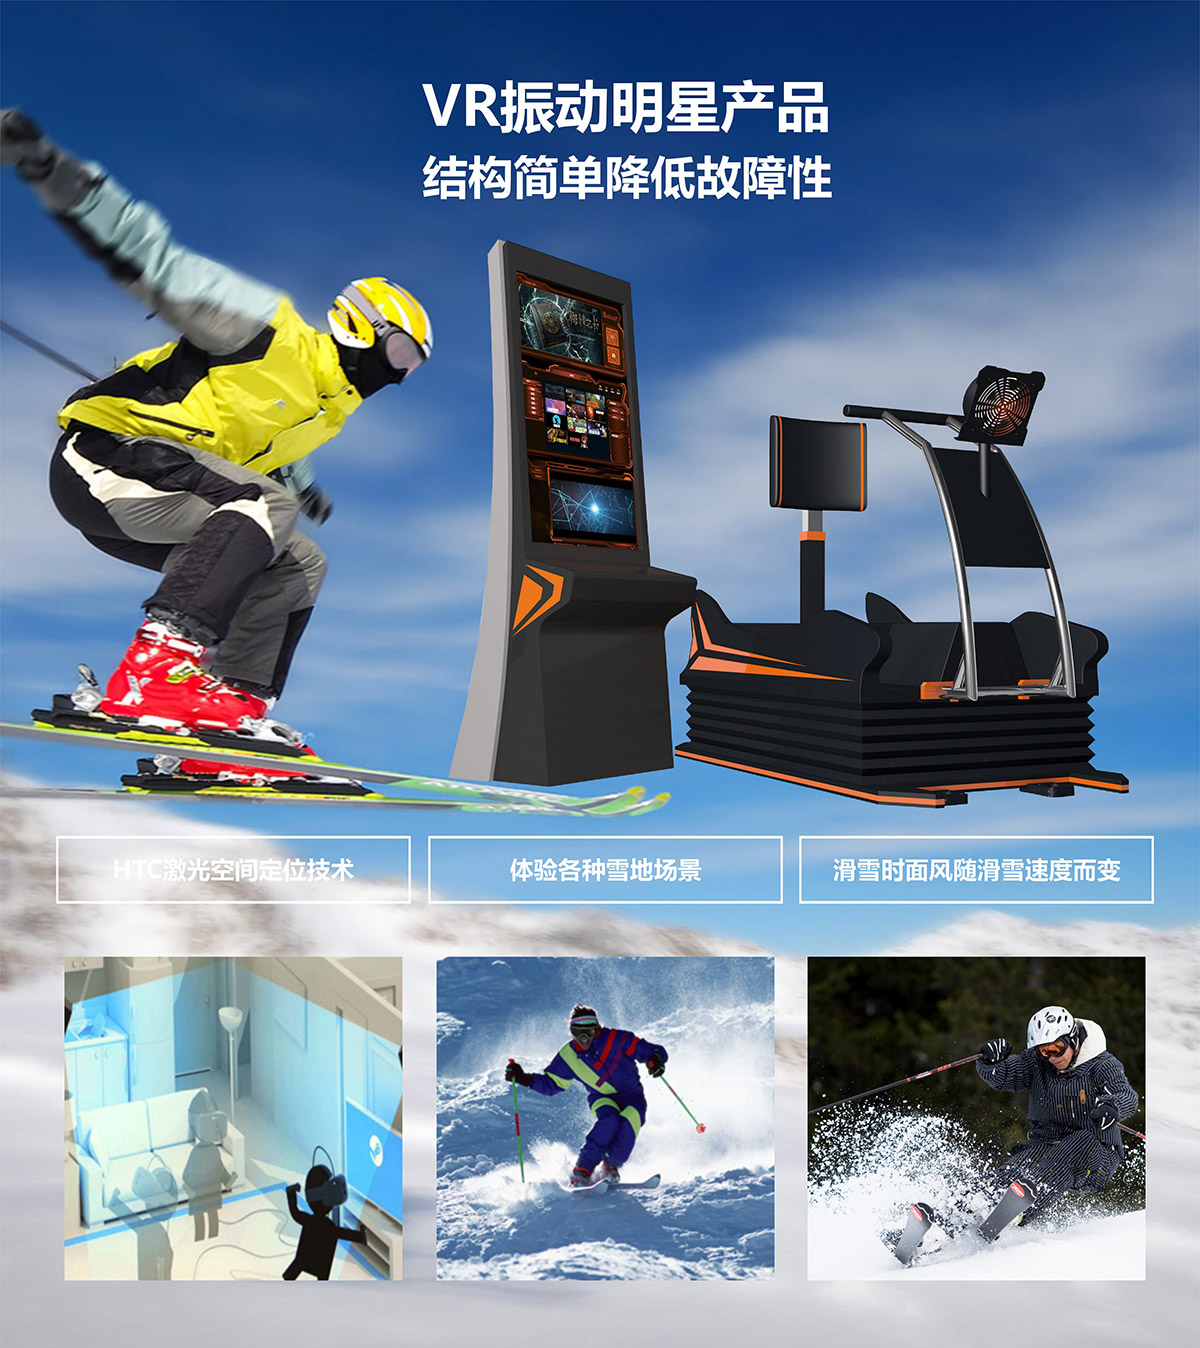 甘肃兰州奇影幻境VR明星产品模拟滑雪.jpg